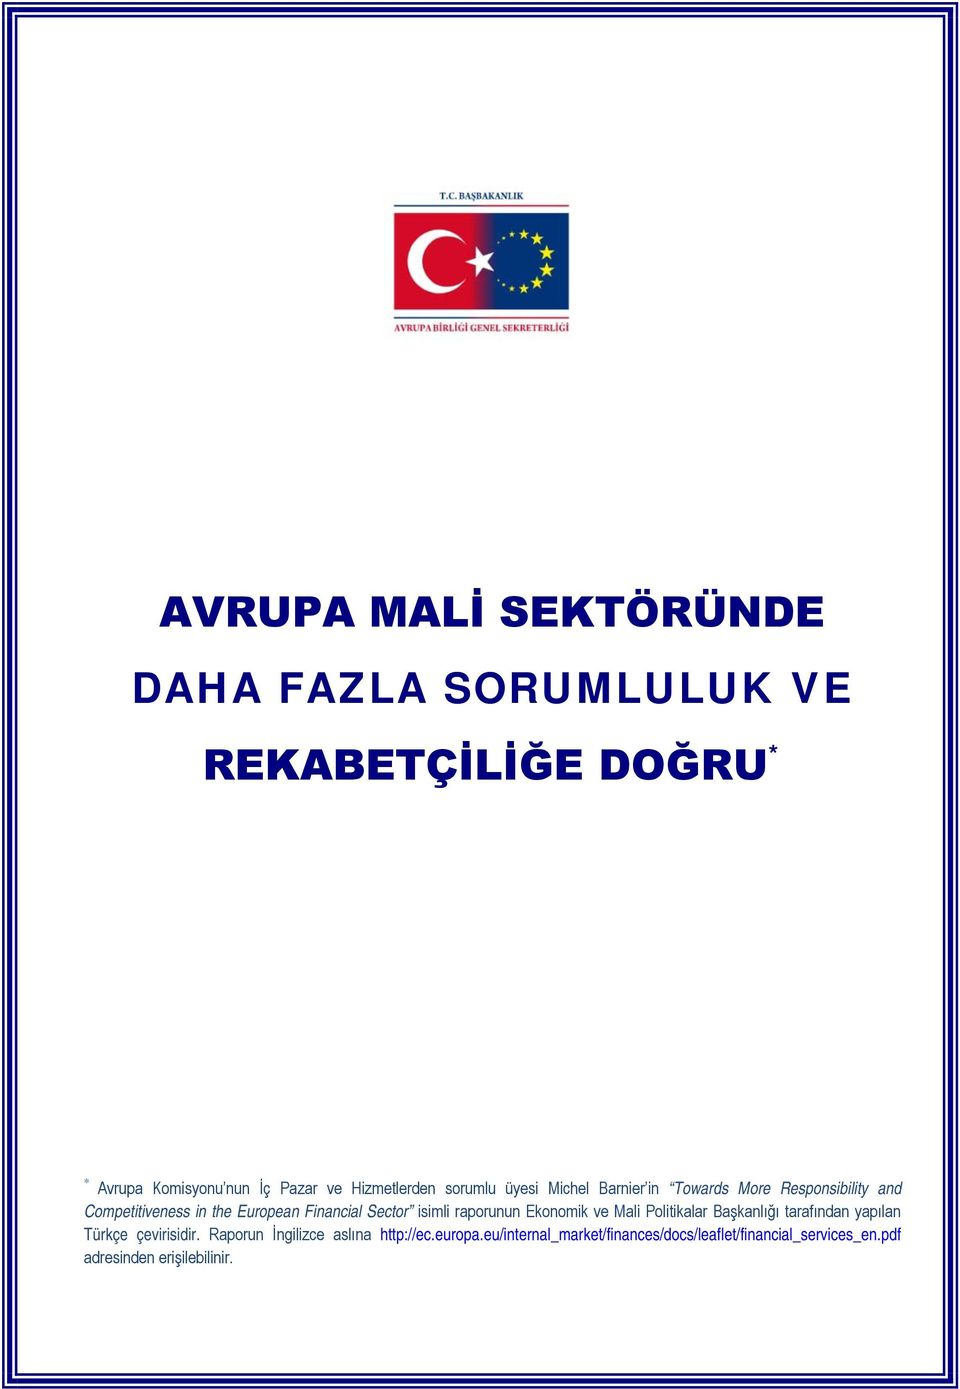 Financial Sector isimli raporunun Ekonomik ve Mali Politikalar Başkanlığı tarafından yapılan Türkçe çevirisidir.